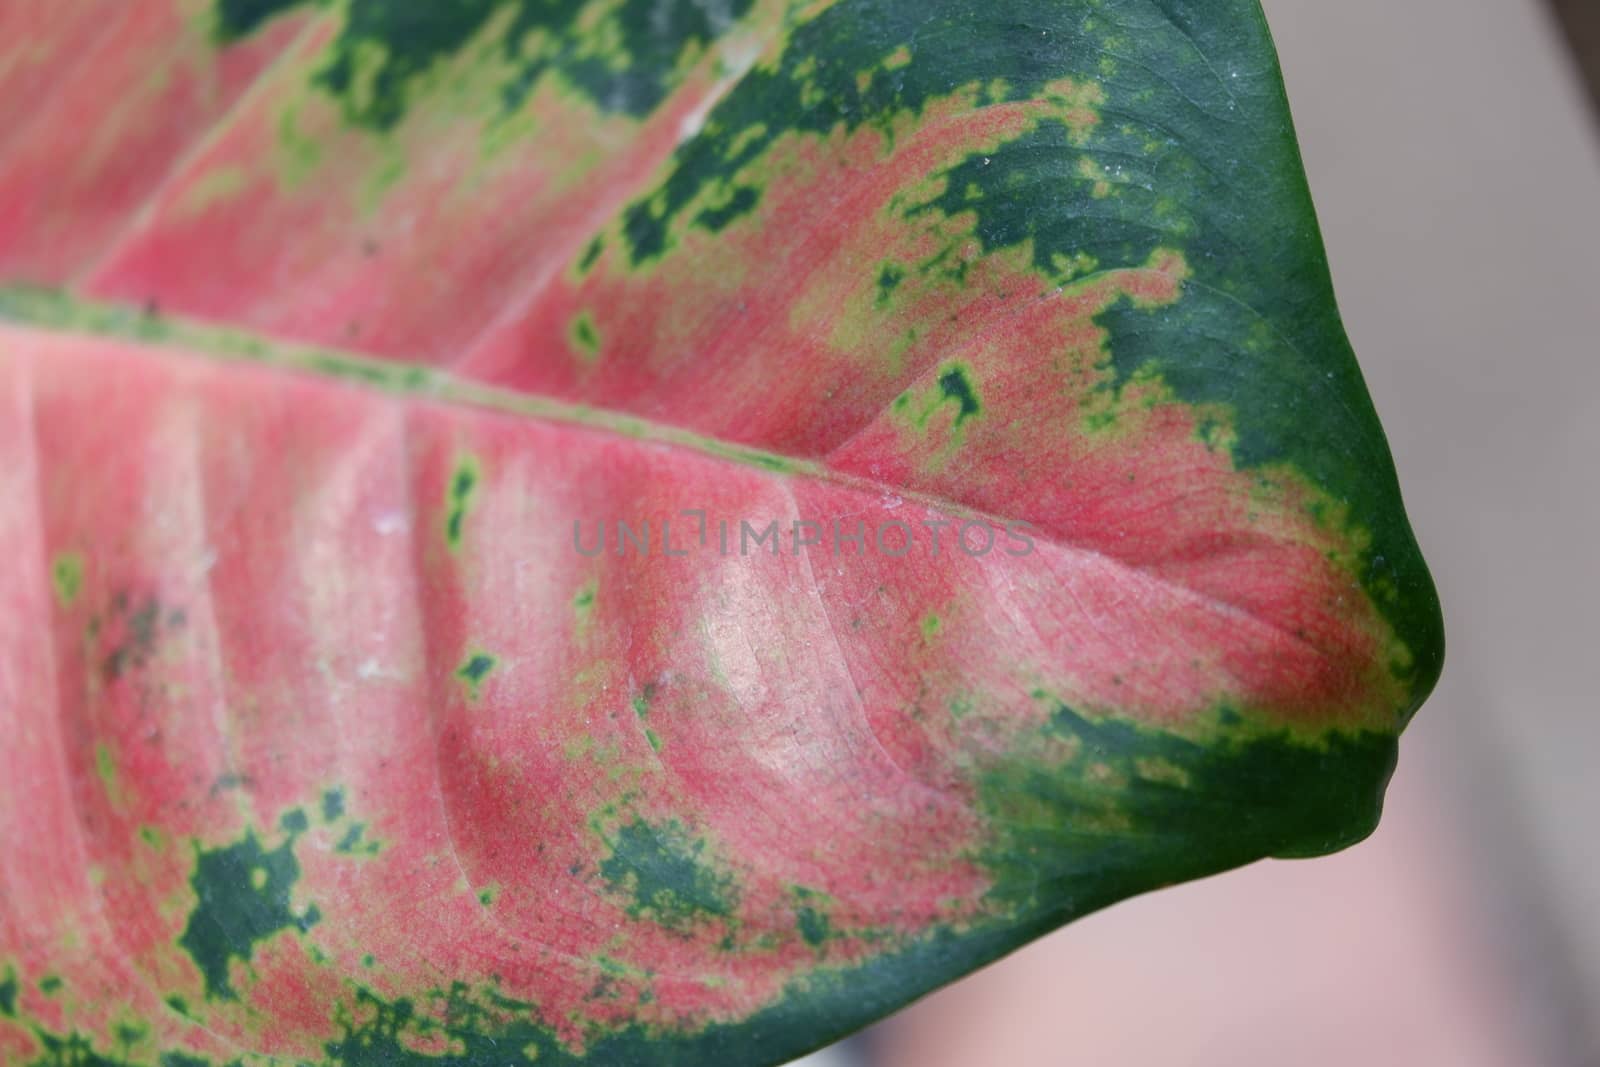 aglonema leaf texture by pengejarsenja